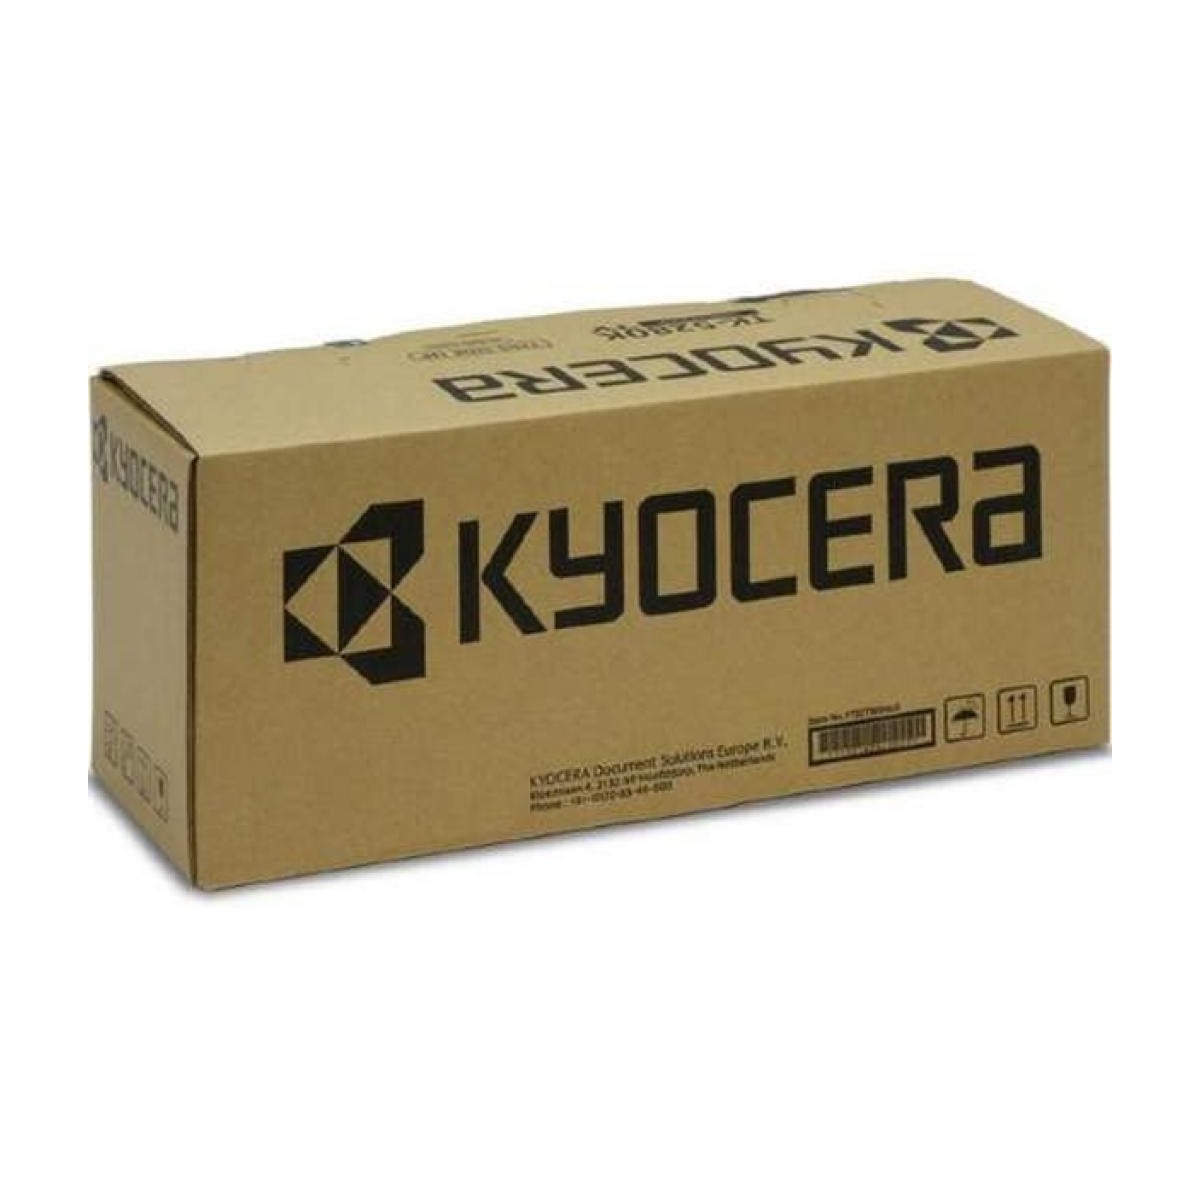 Kyocera FK-5240 - Laser - 100000 pages - Kyocera - ECOSYS M5521cdn / ECOSYS M5521cdw / ECOSYS M5526cdn / ECOSYS M5526cdw / ECOSY